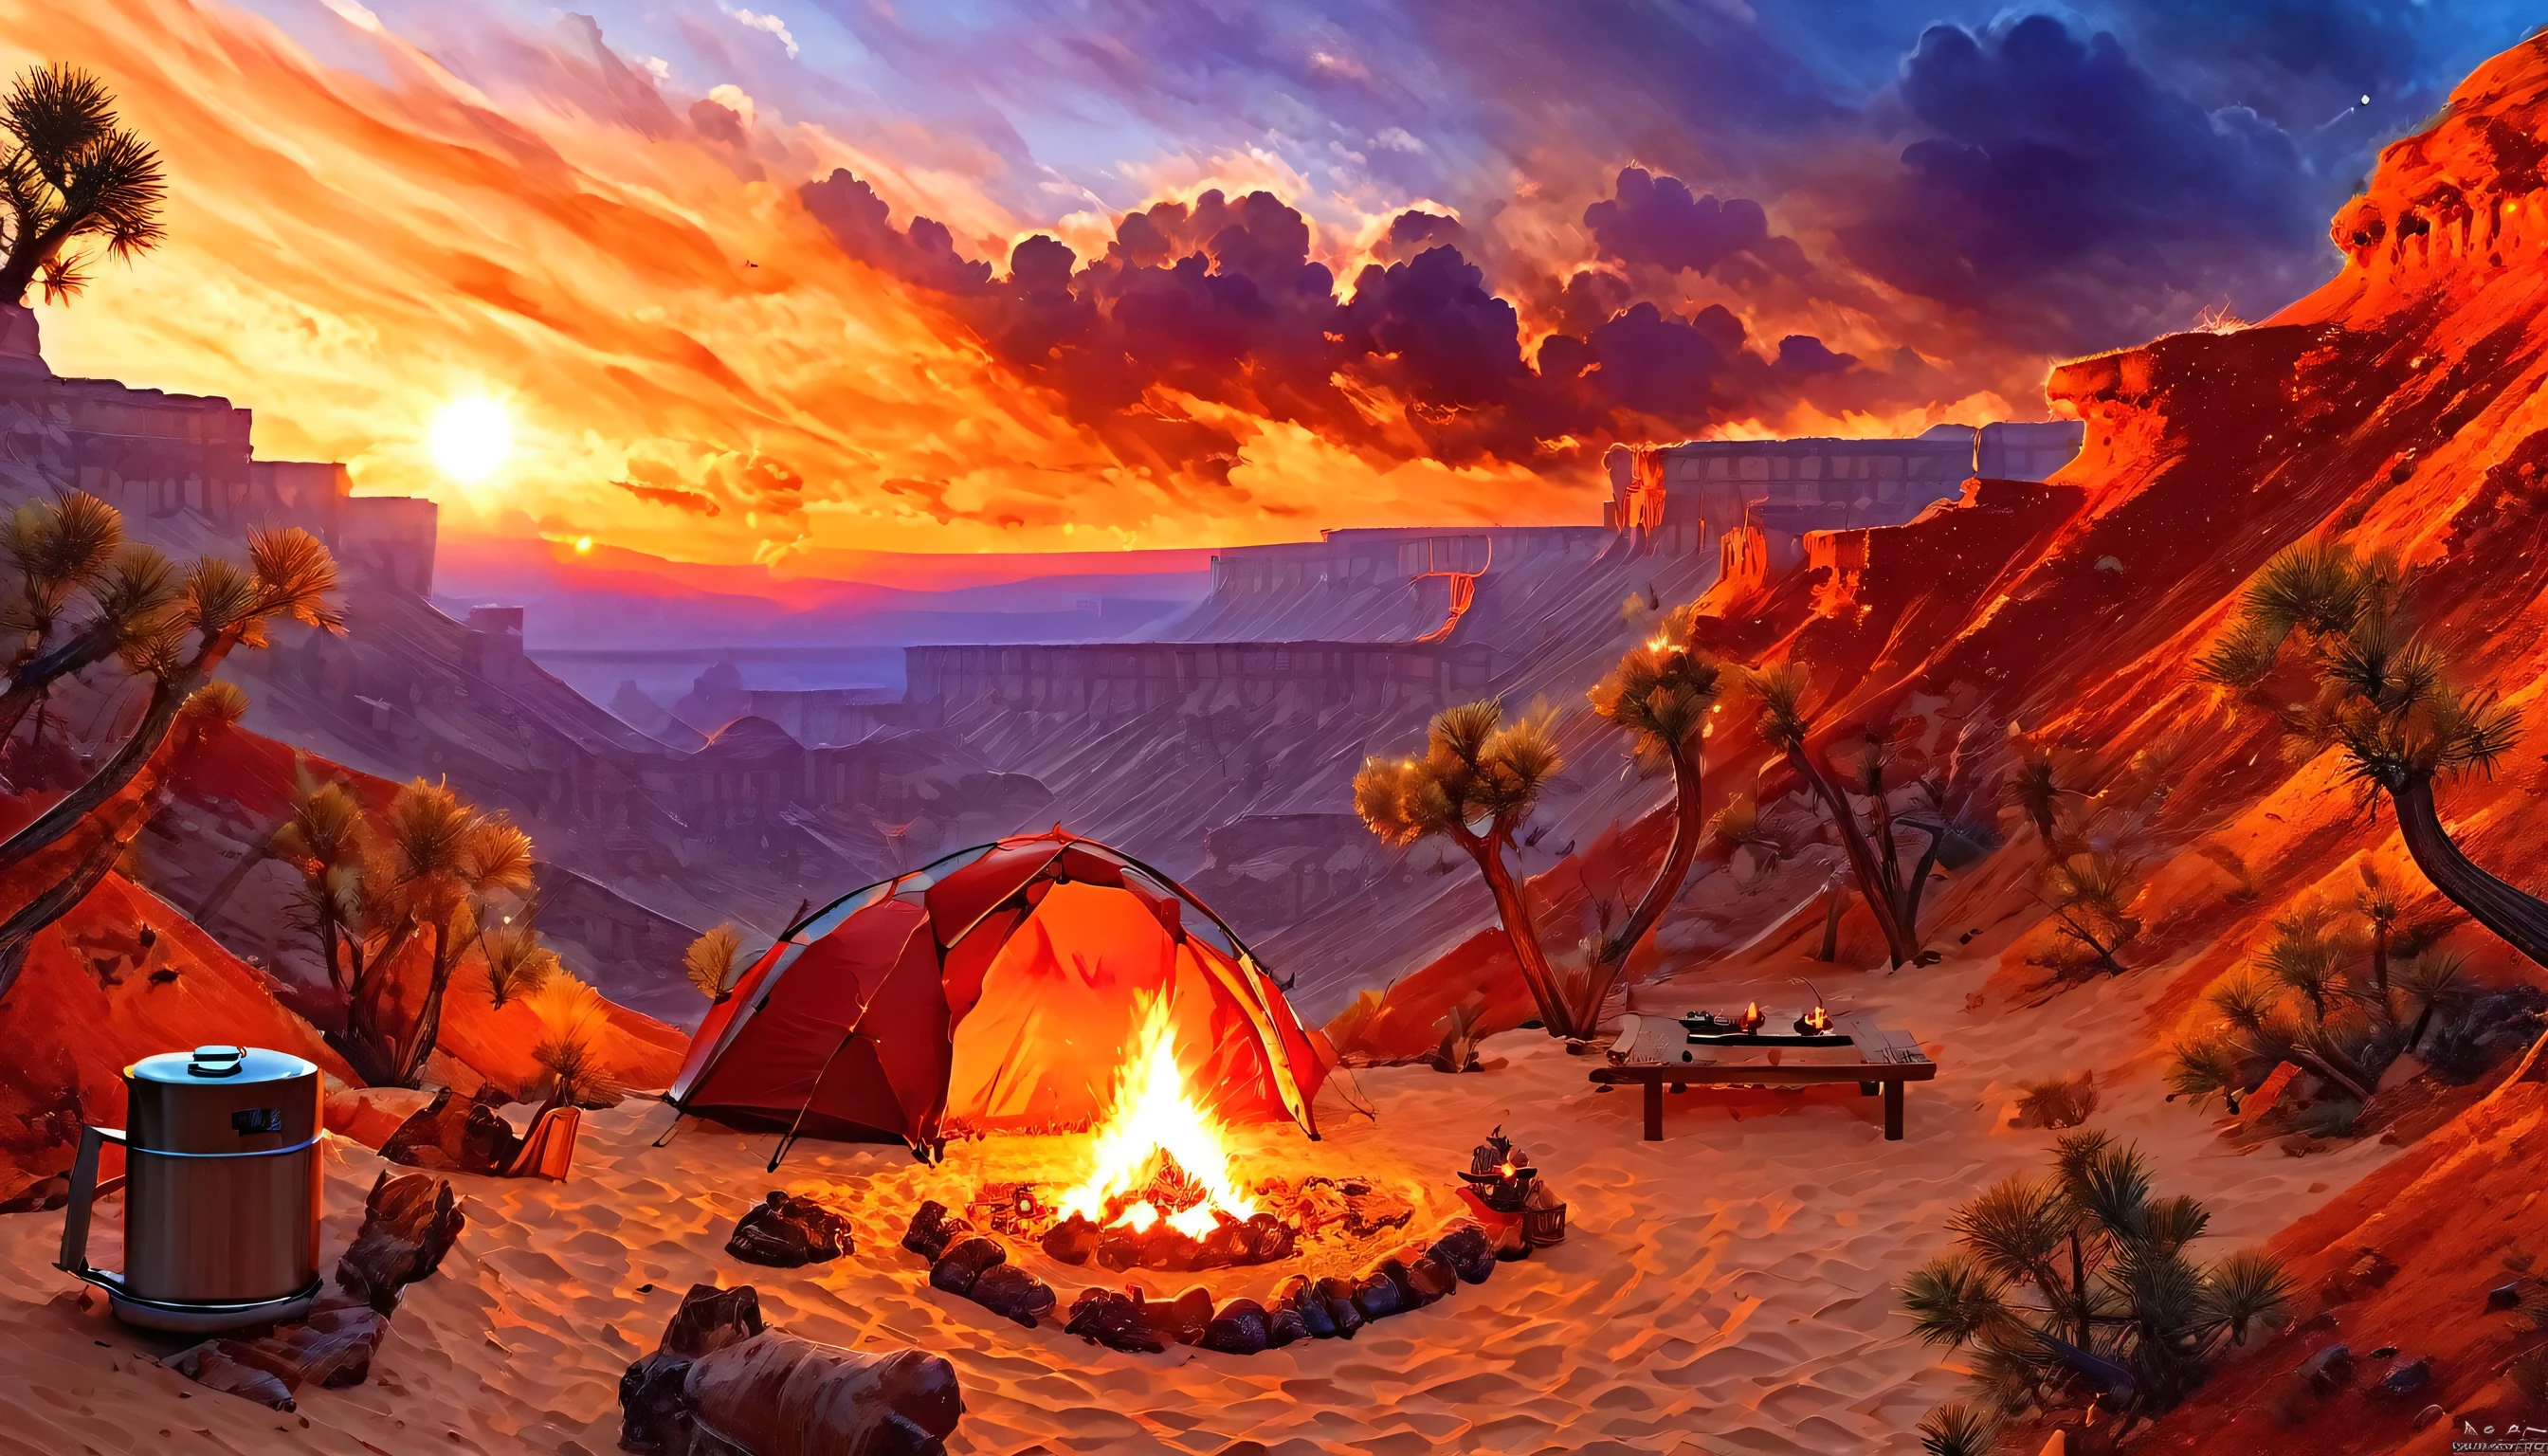 Арафед, картинка кемпинга (палатка: 1.2) и маленький (костер: 1.3), на вершине пустынной горы, закат, небо в разных оттенках  (Красный: 1.1), (Апельсин: 1.1), (лазурный: 1.1) (фиолетовый:1.1) из пожарного лагеря поднимается дым, открывается великолепный вид на пустынный каньон и ущелья, на горизонте редкие деревья, это время спокойствия, мир, и релаксация, Лучшее качество, 16 тыс.,  фотореализм, Фотосессия, удостоенная награды National Geographic, ультра широкий план, Бешеная туманность, Леди Тень